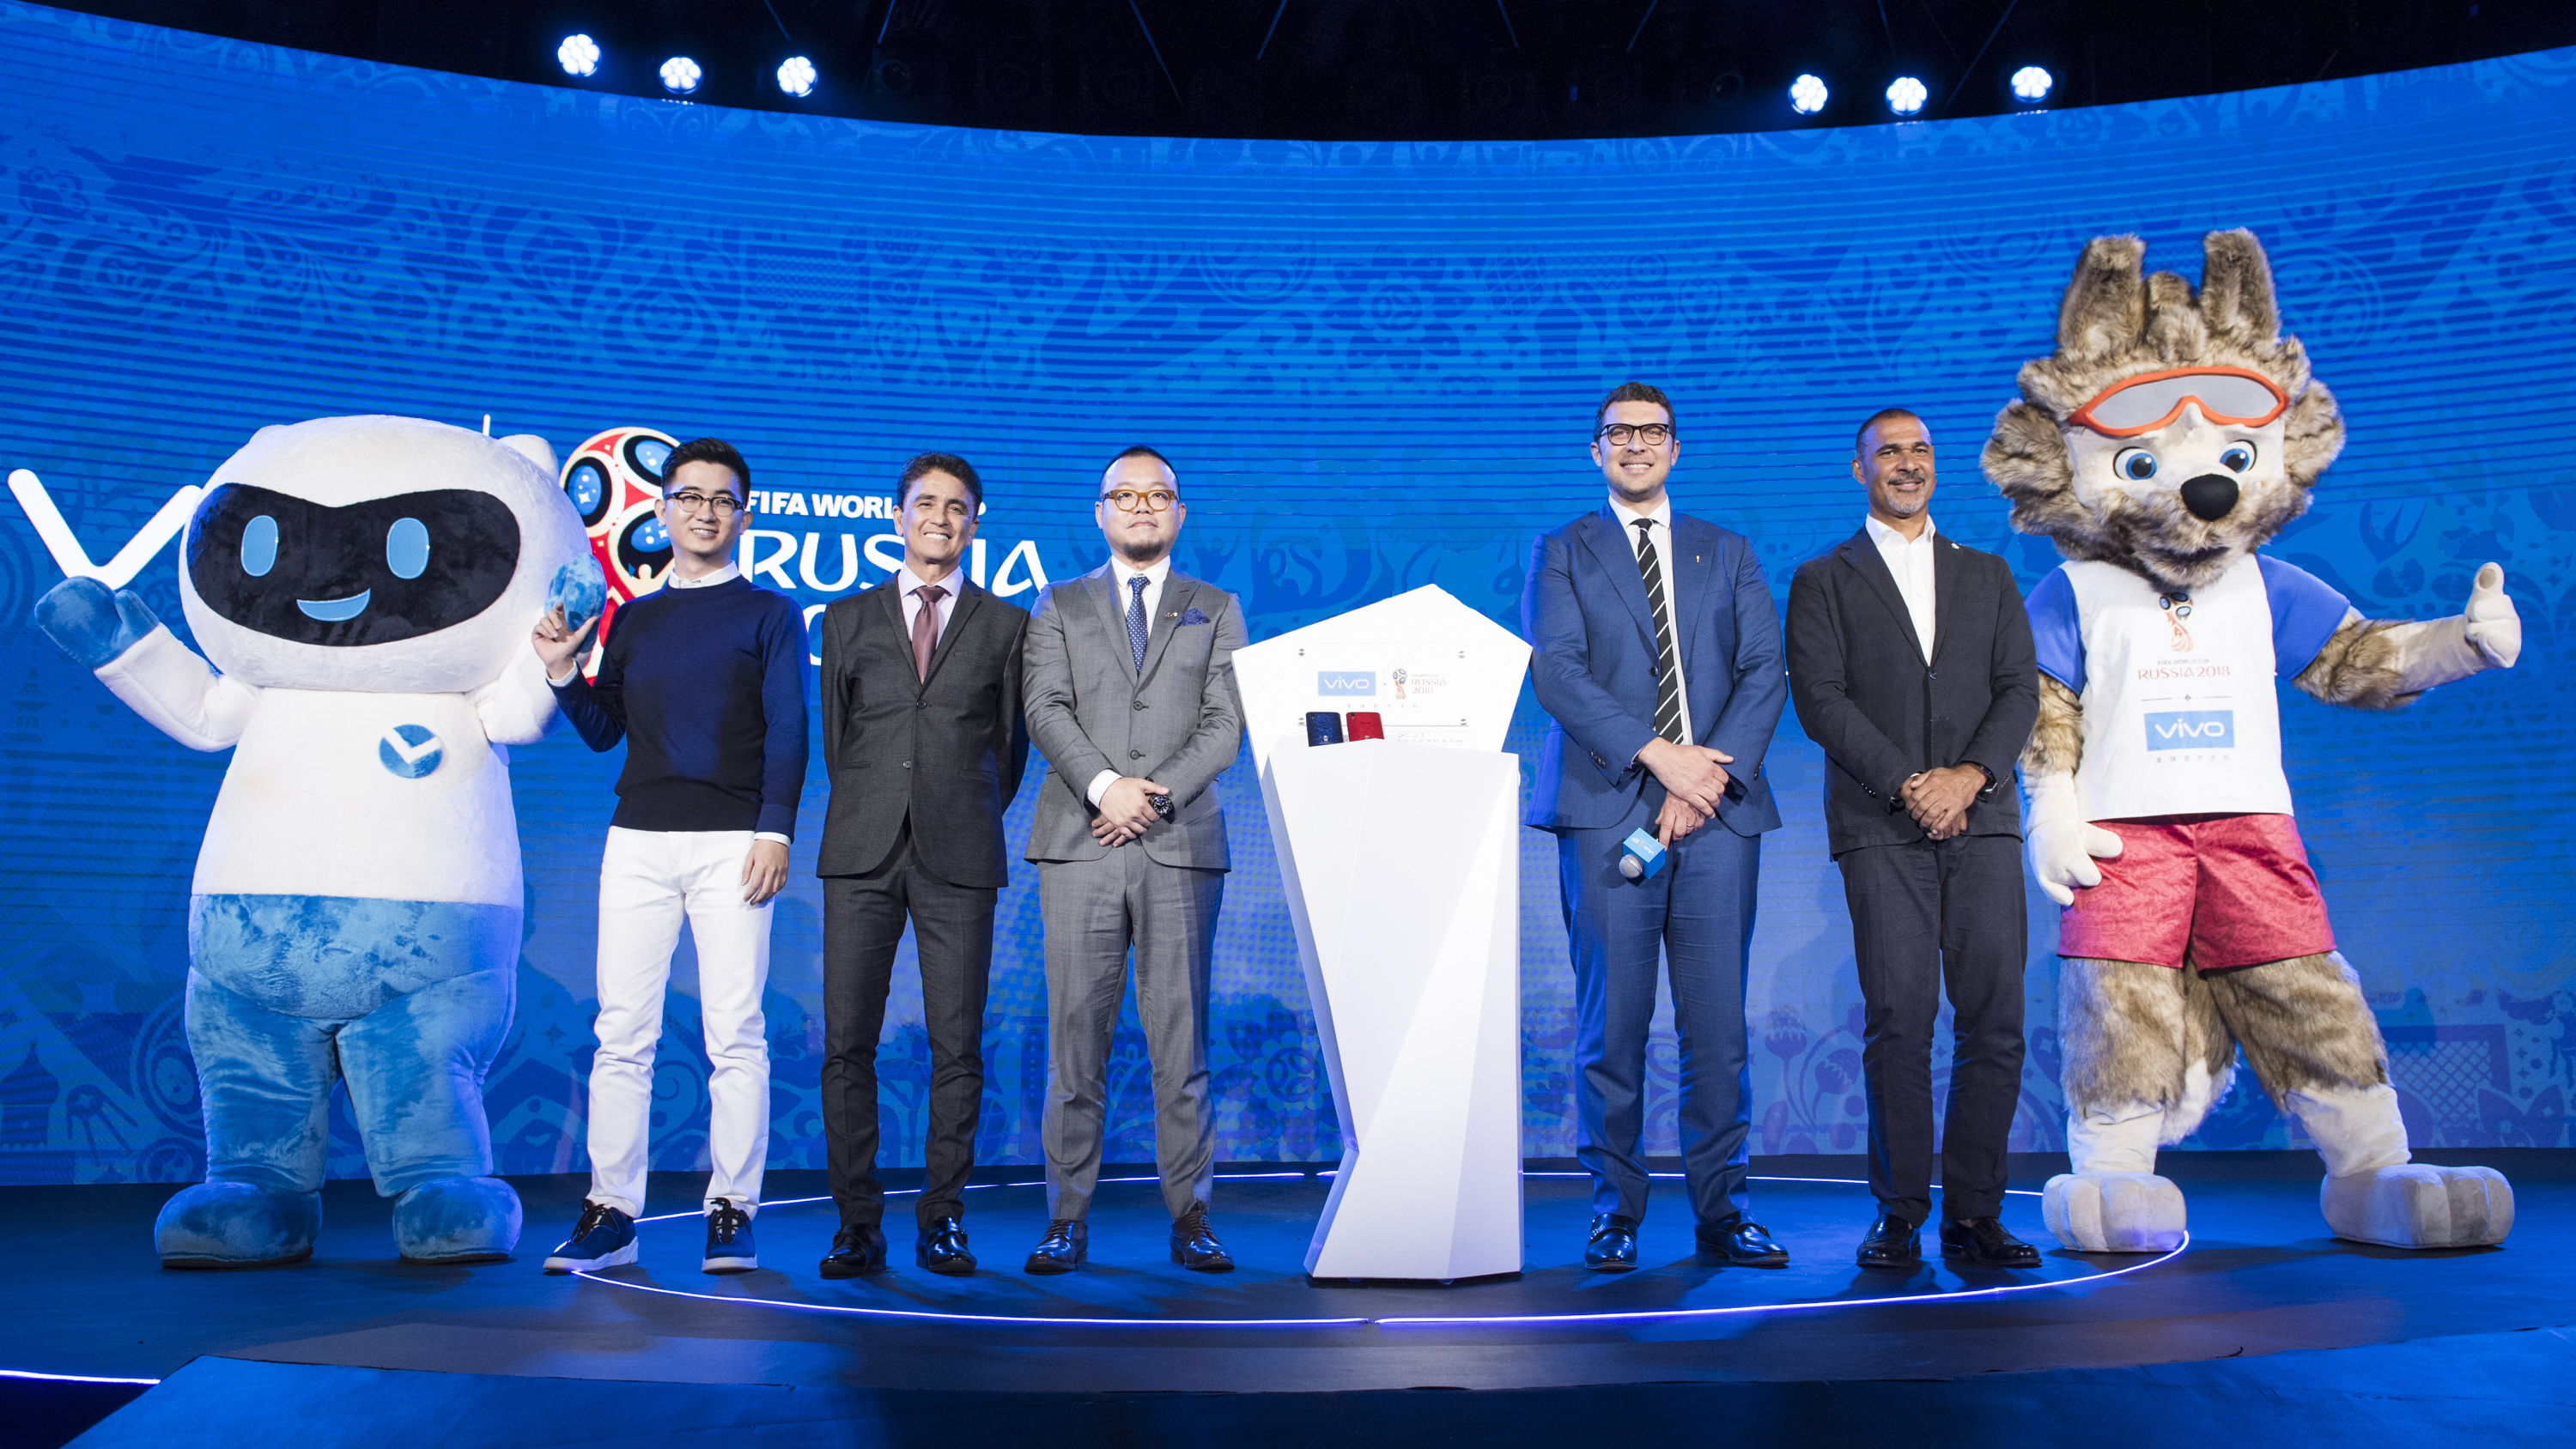 Vivo ra mắt Vivo V9 phiên bản đặc biệt dành cho FIFA World Cup 2018 và khởi động chiến dịch đặc biệt nhân sự kiện này